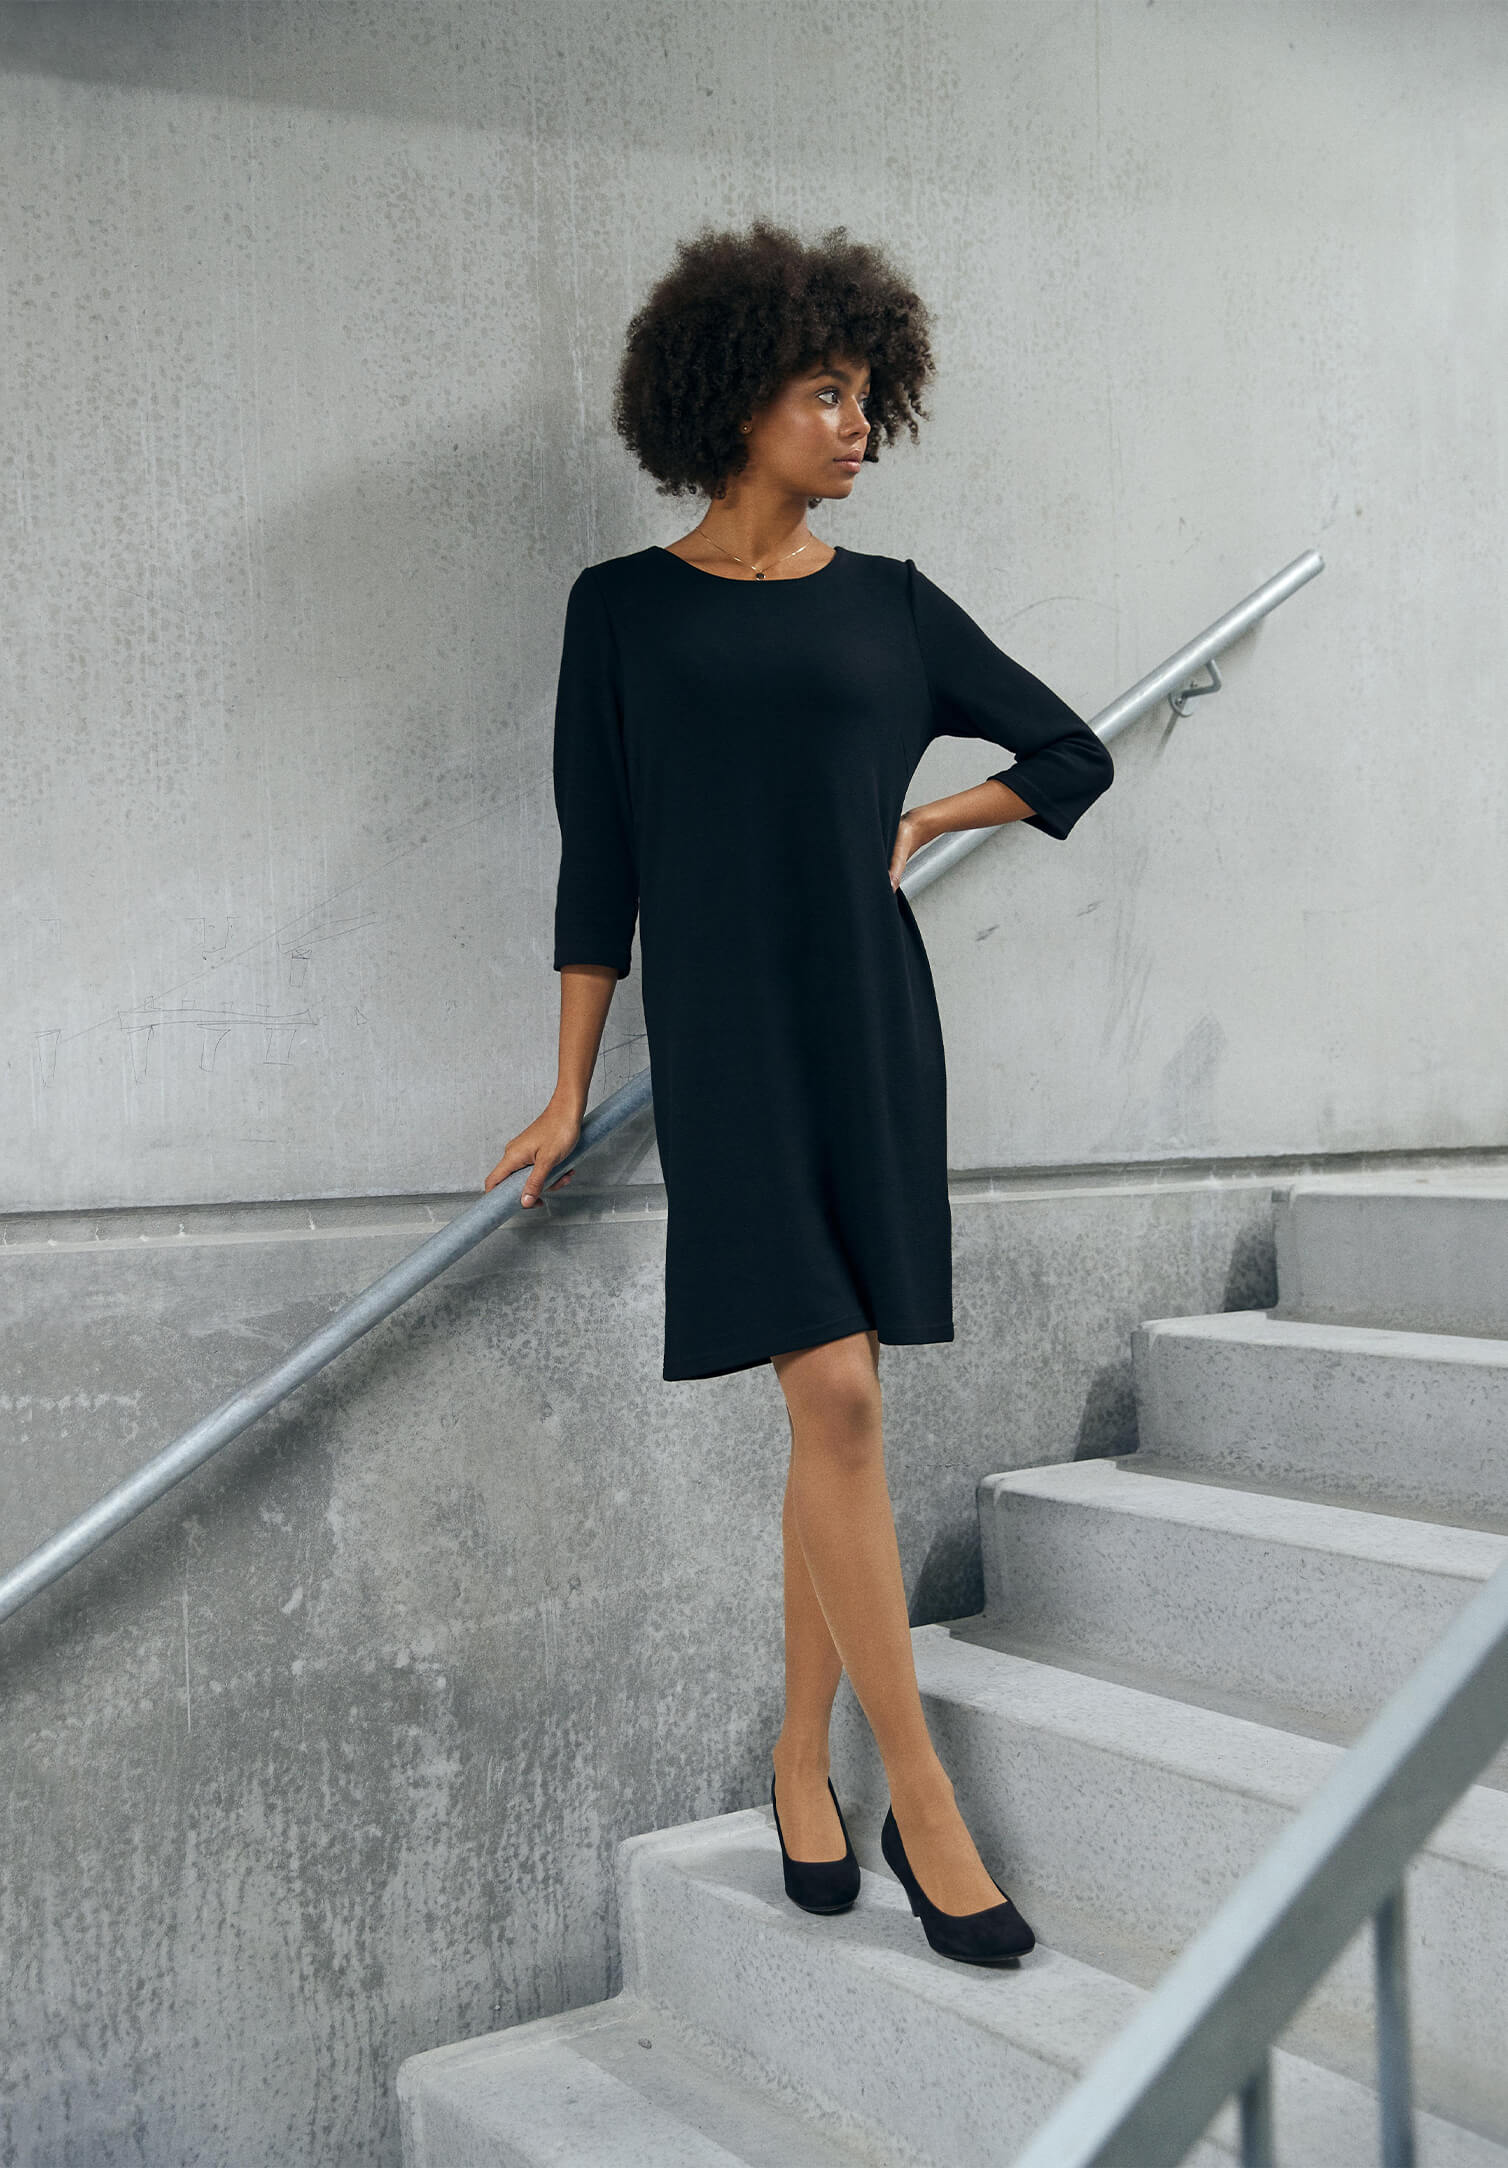 Kleid strukturiert Modern Fit - schwarz - 4XL